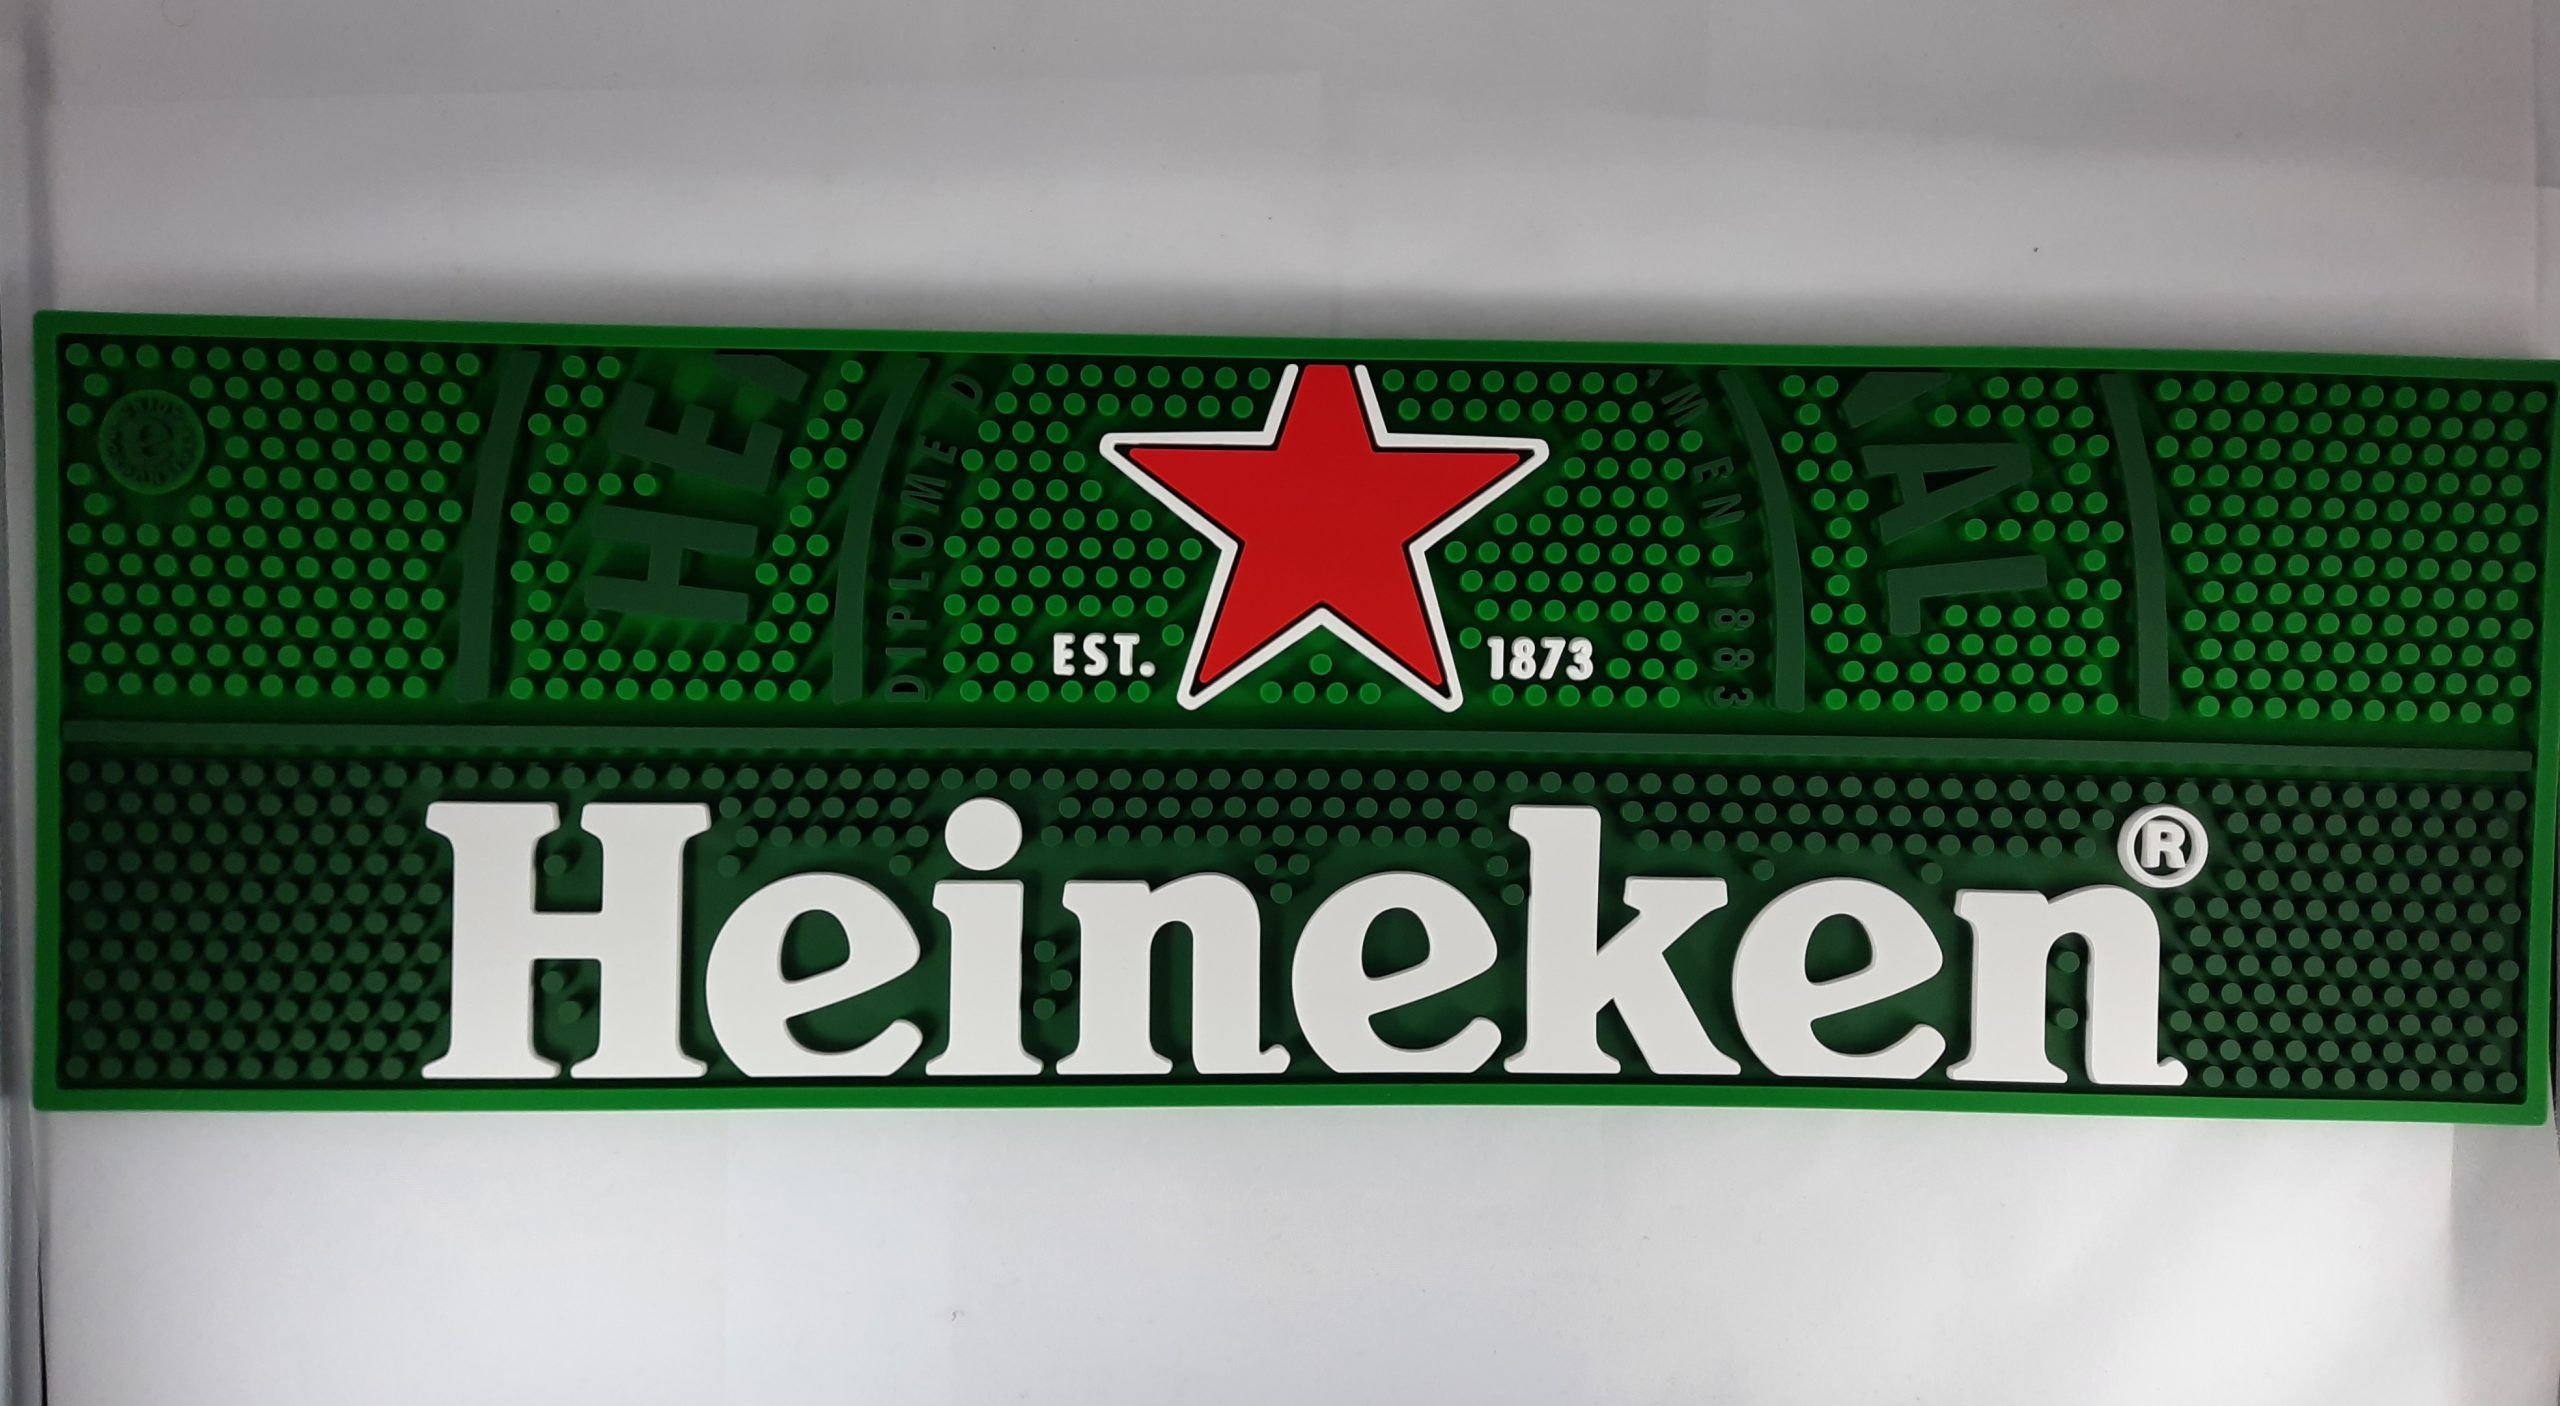 Heineken New Heineken Rubber beer mat drip mat bar mat spill mat bar runner beer coasters 